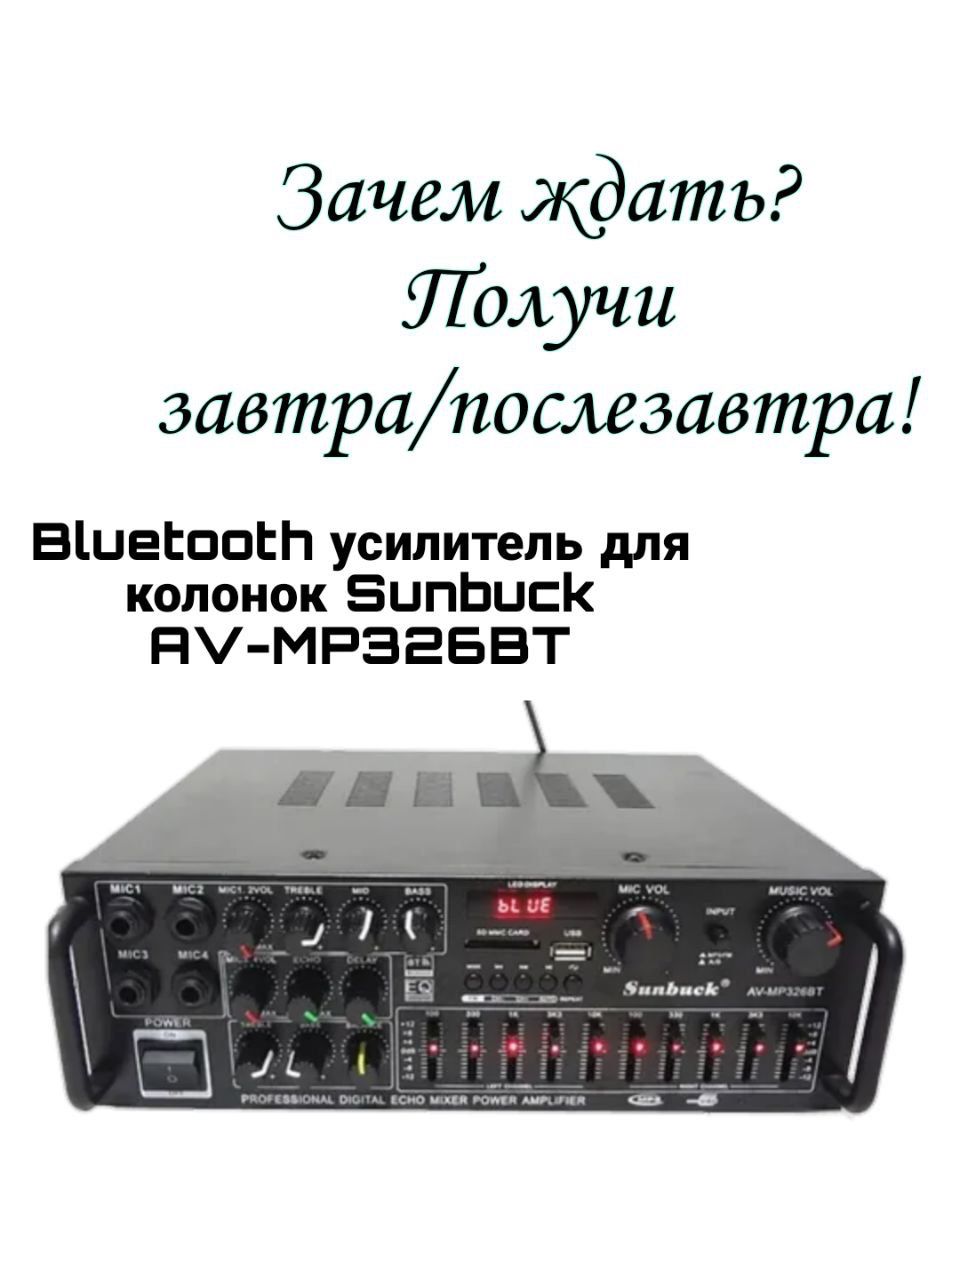 Sunbuck 326bt усилитель. Sunbuck av-mp326bt отзывы.